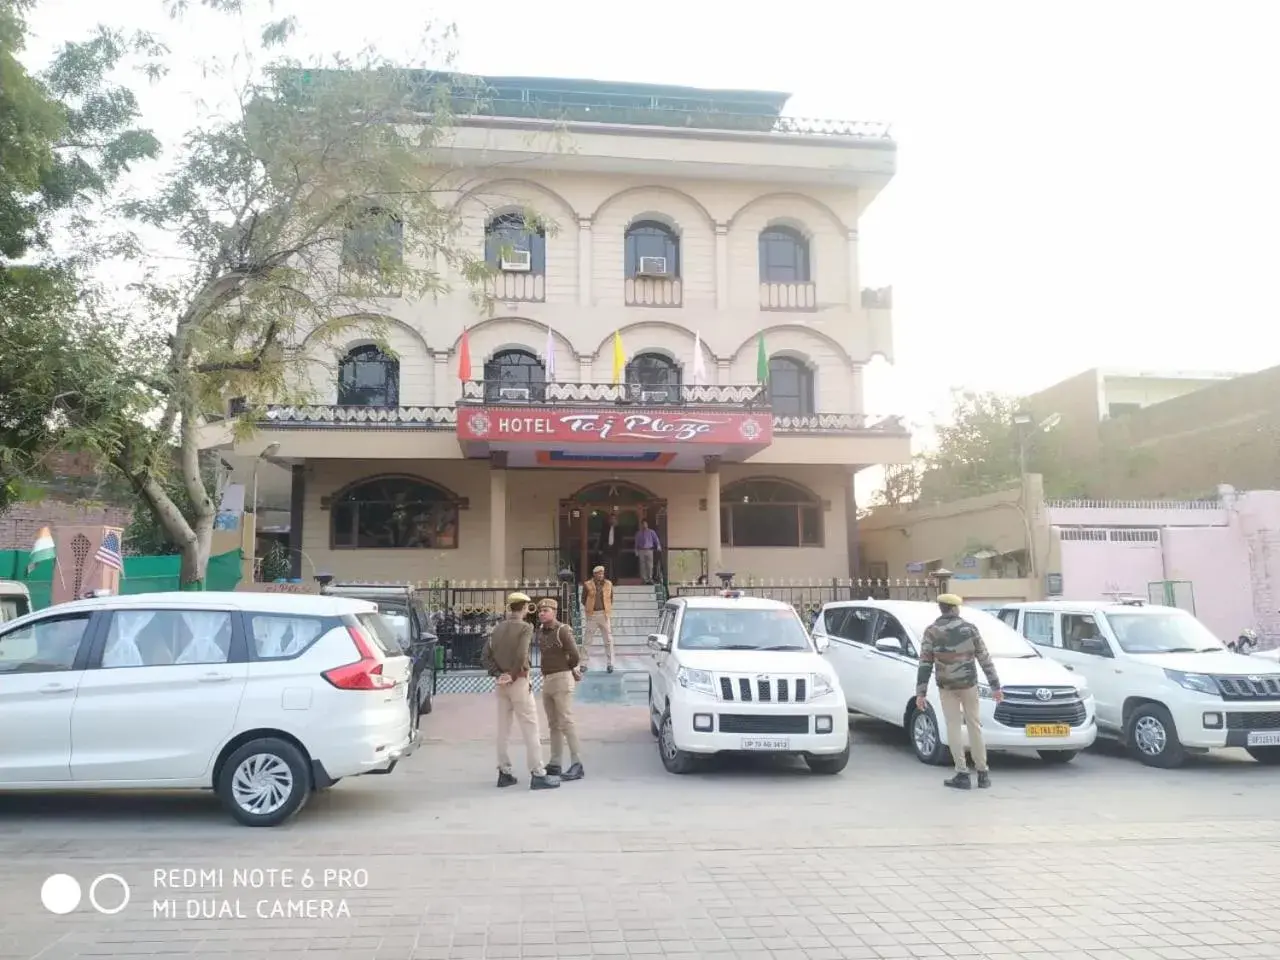 Property Building in Hotel Taj Plaza, VIP Road, Agra